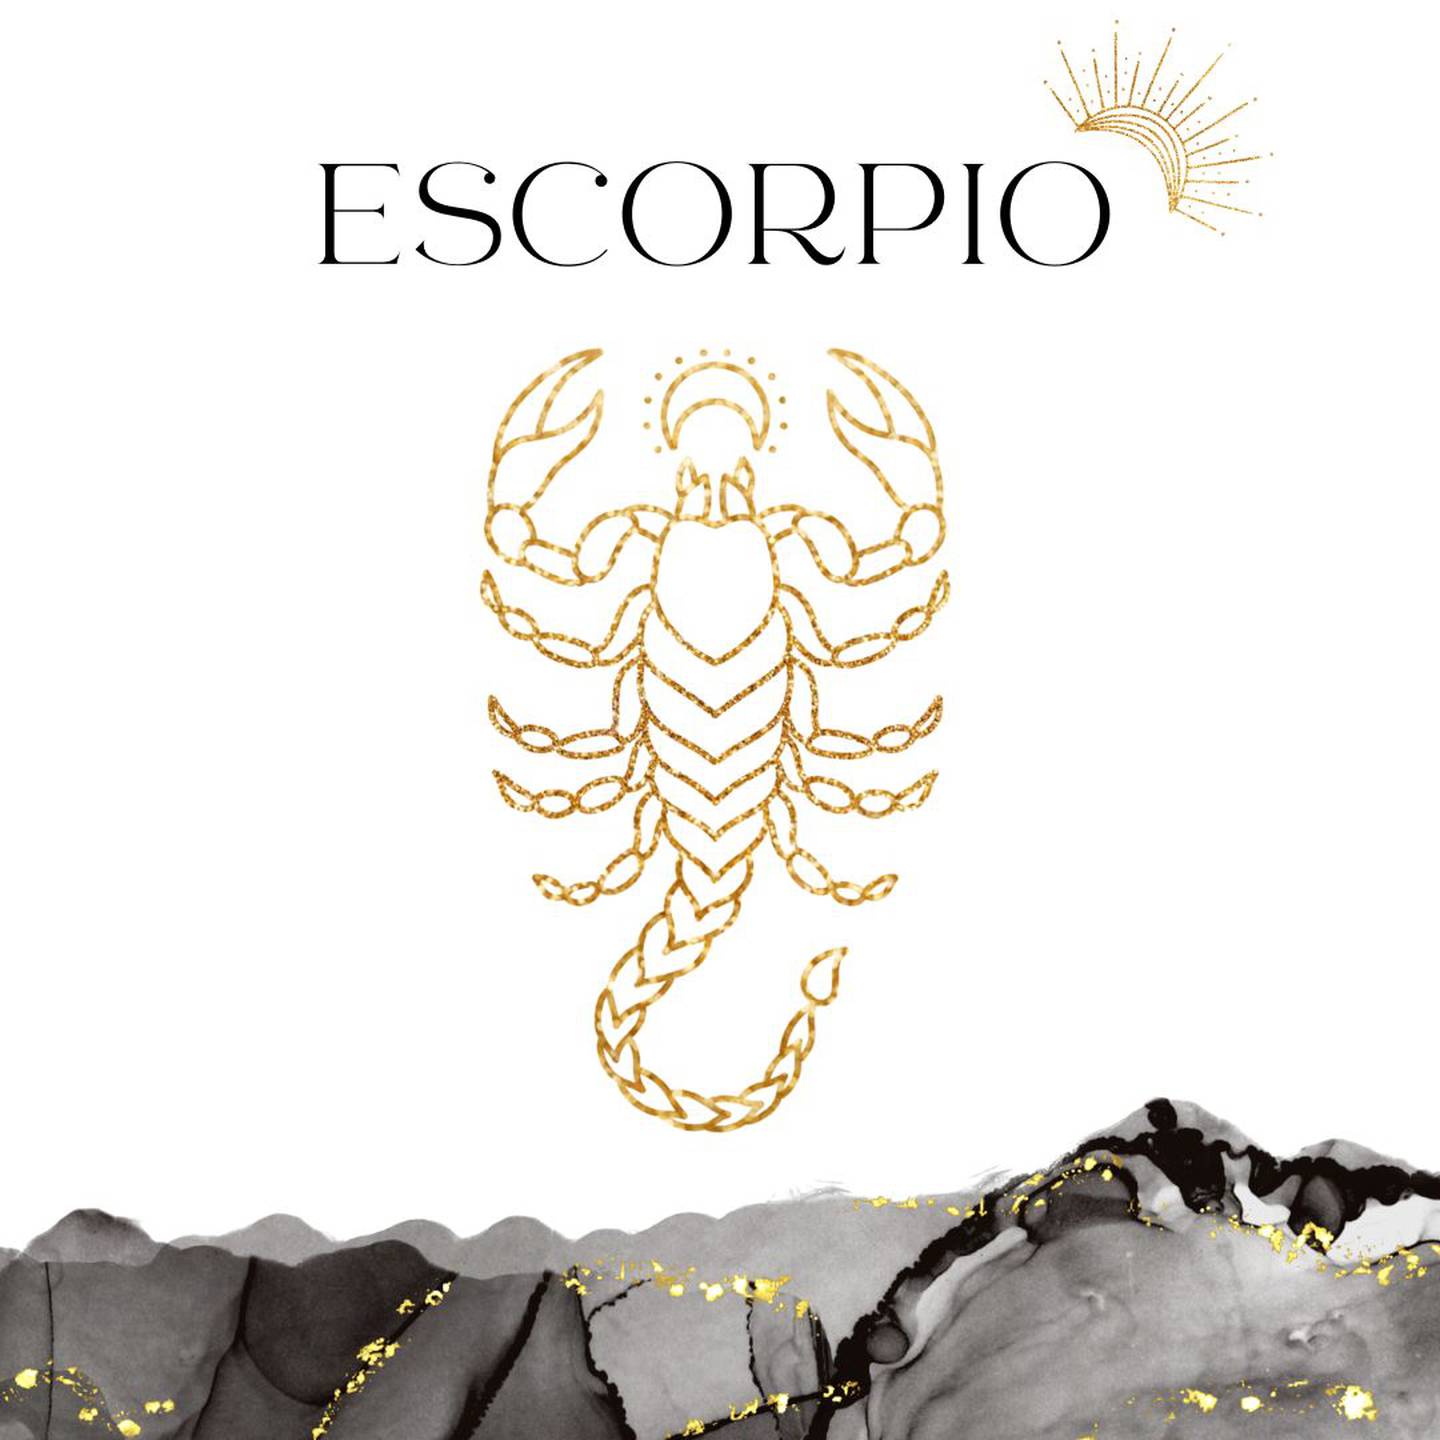 Palabra 'ESCORPIO' en letras grandes y negras en el centro. Debajo, símbolo del signo de Escorpio: un escorpión dorado.